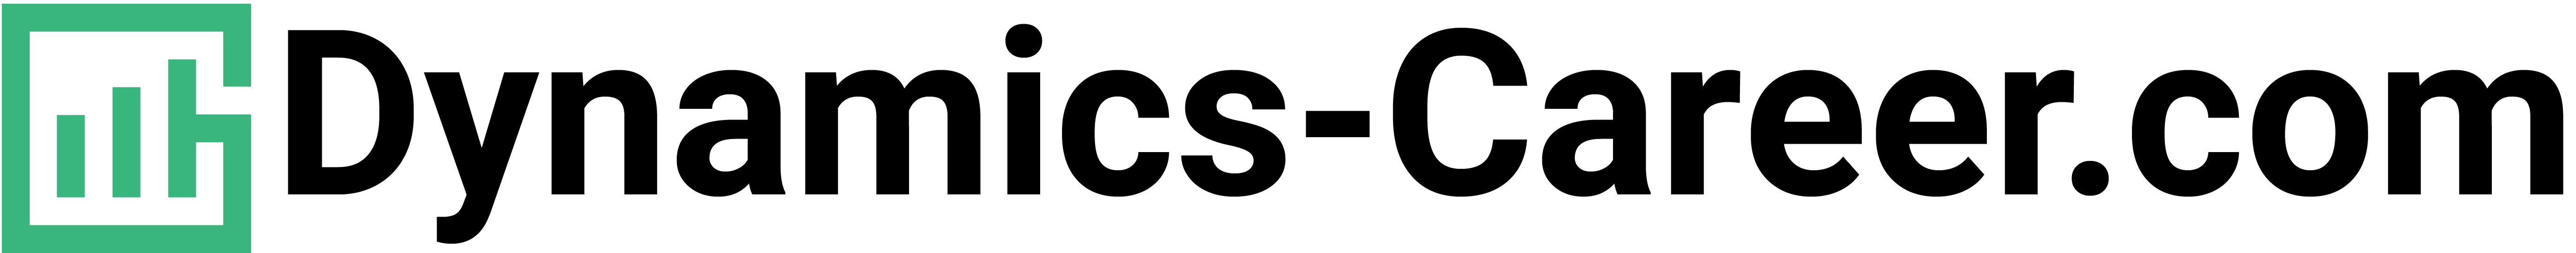 Dynamics Career Company Logo